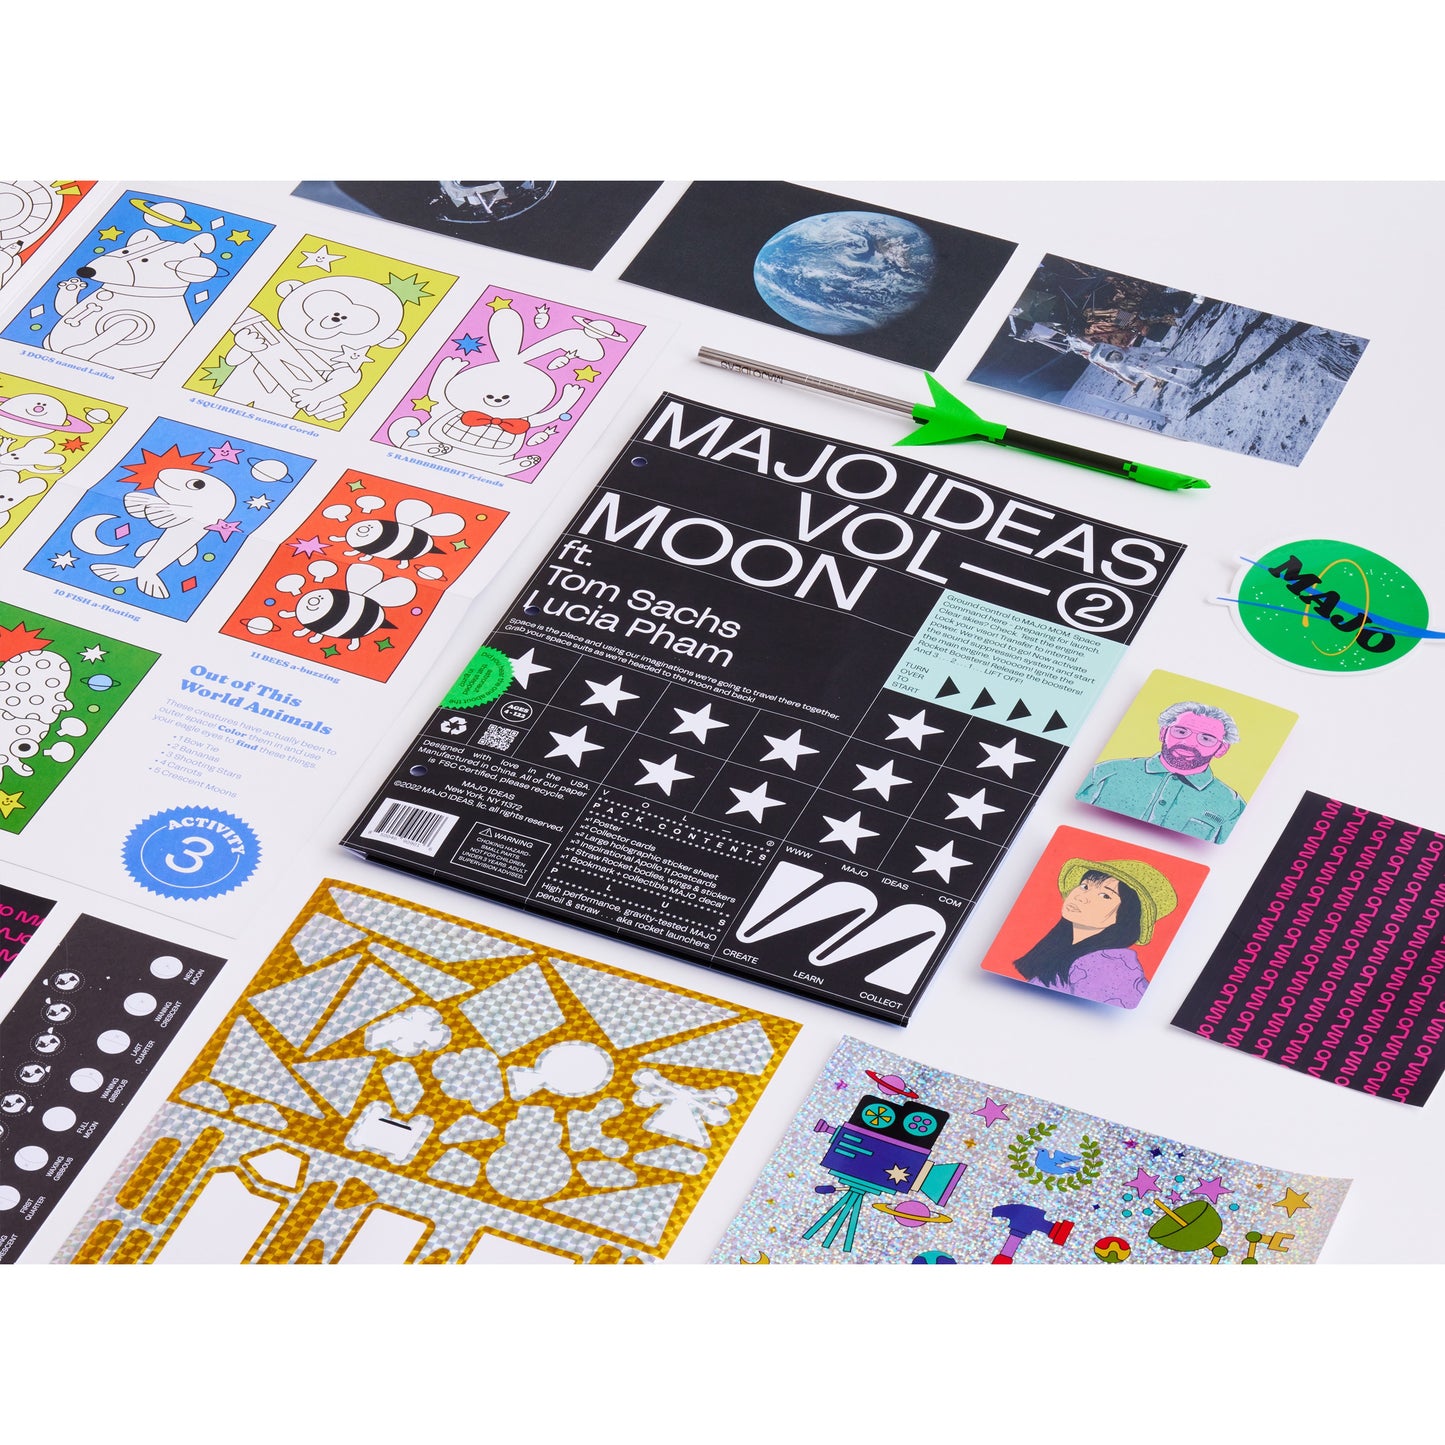 Moon Sticker Based Art Pack - Volume 2